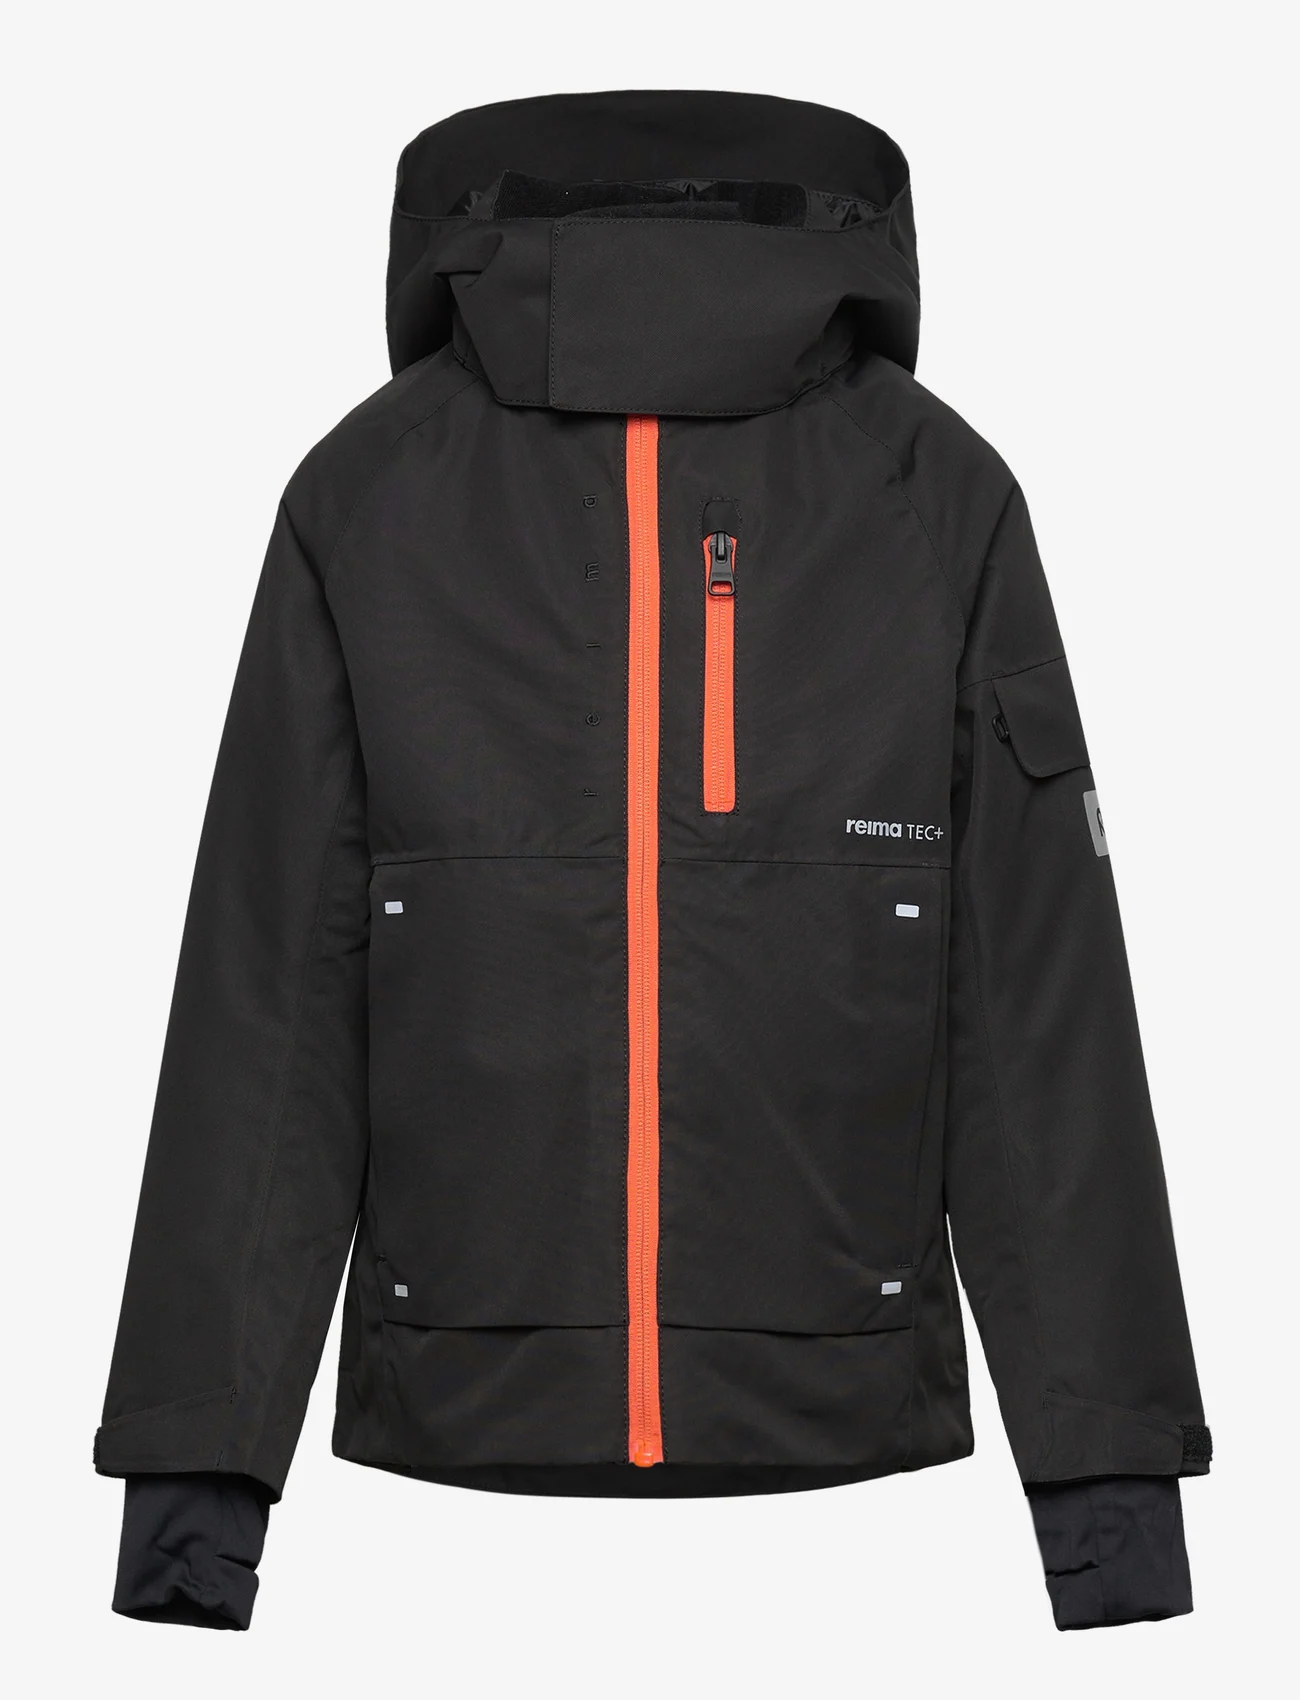 Reima - Reimatec winter jacket, Tieten - winterjacken - black - 0